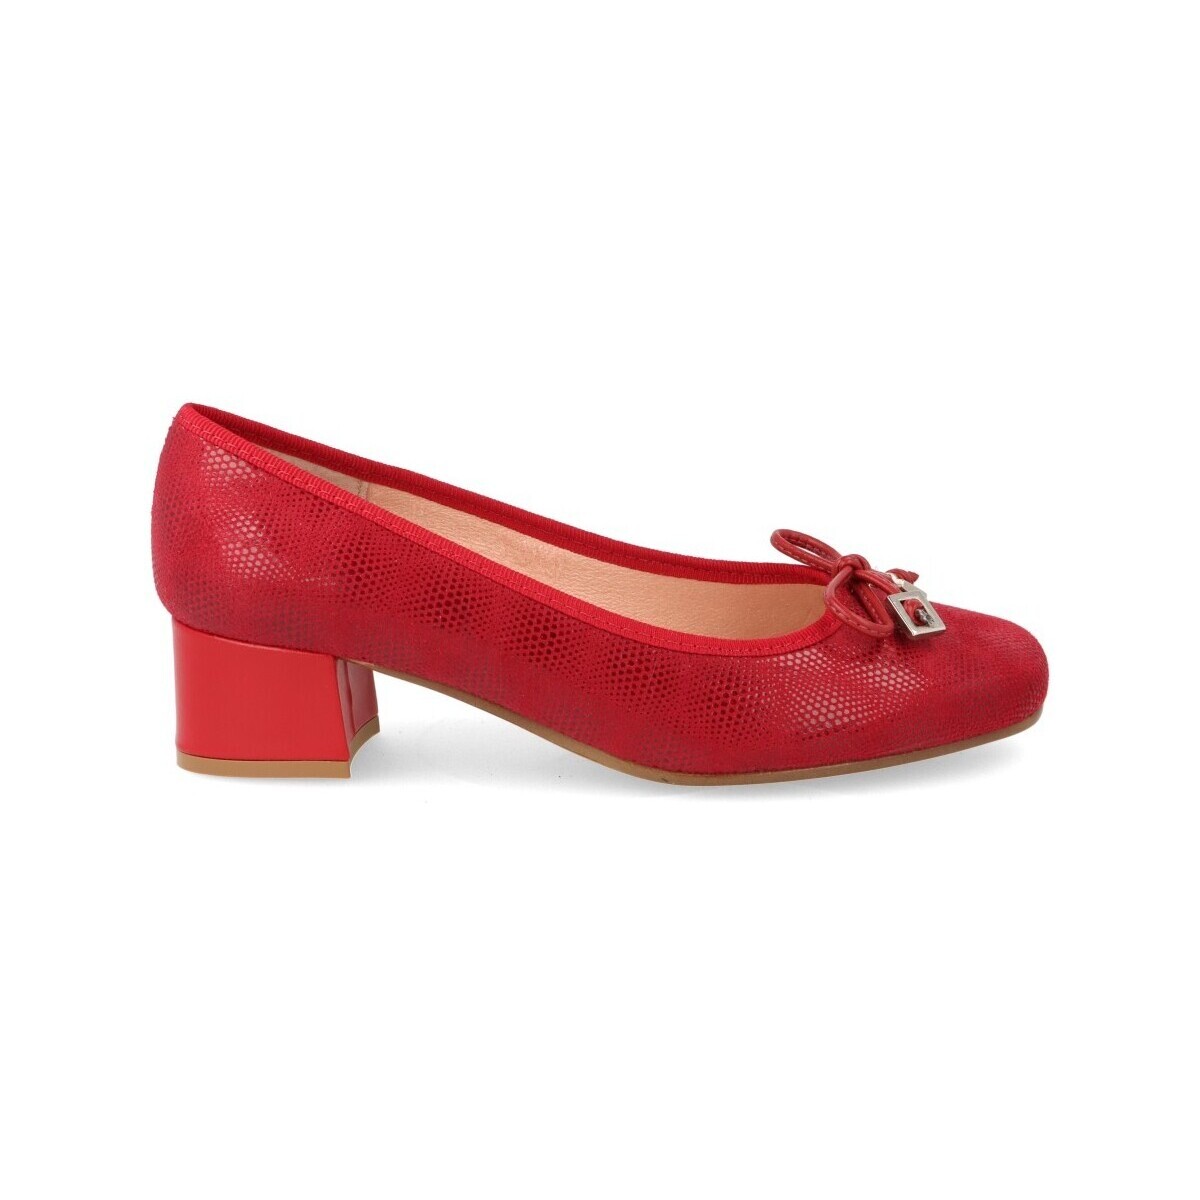 Sapatos Mulher Escarpim Vale In  Vermelho